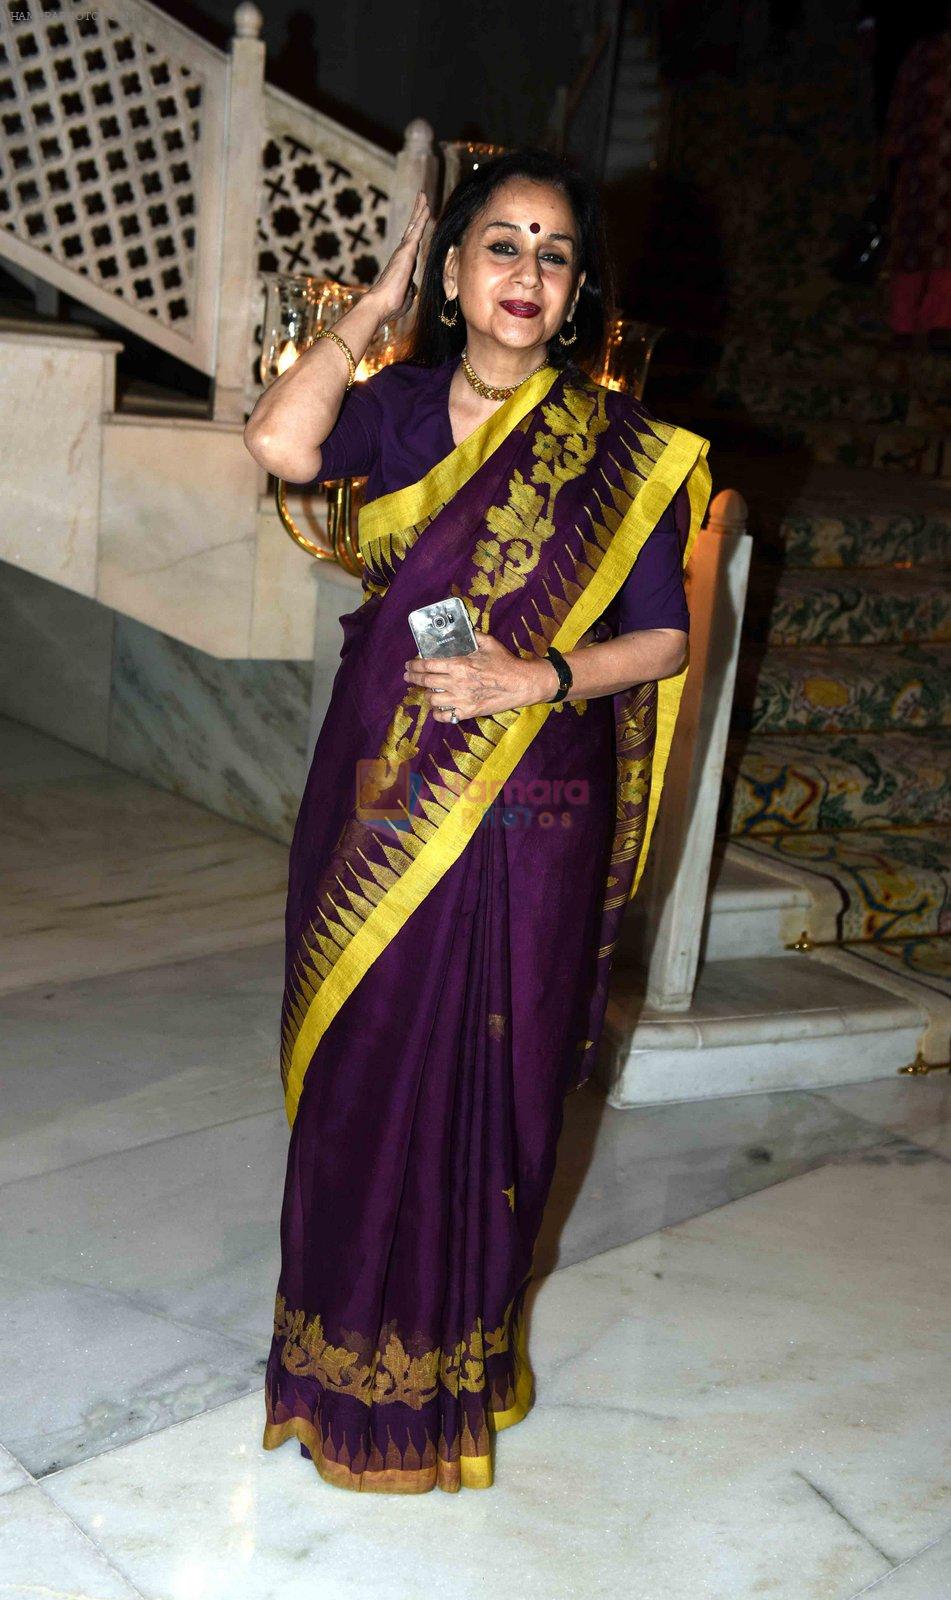 at Priyanka Chopra's party in Delhi on 12th April 2016